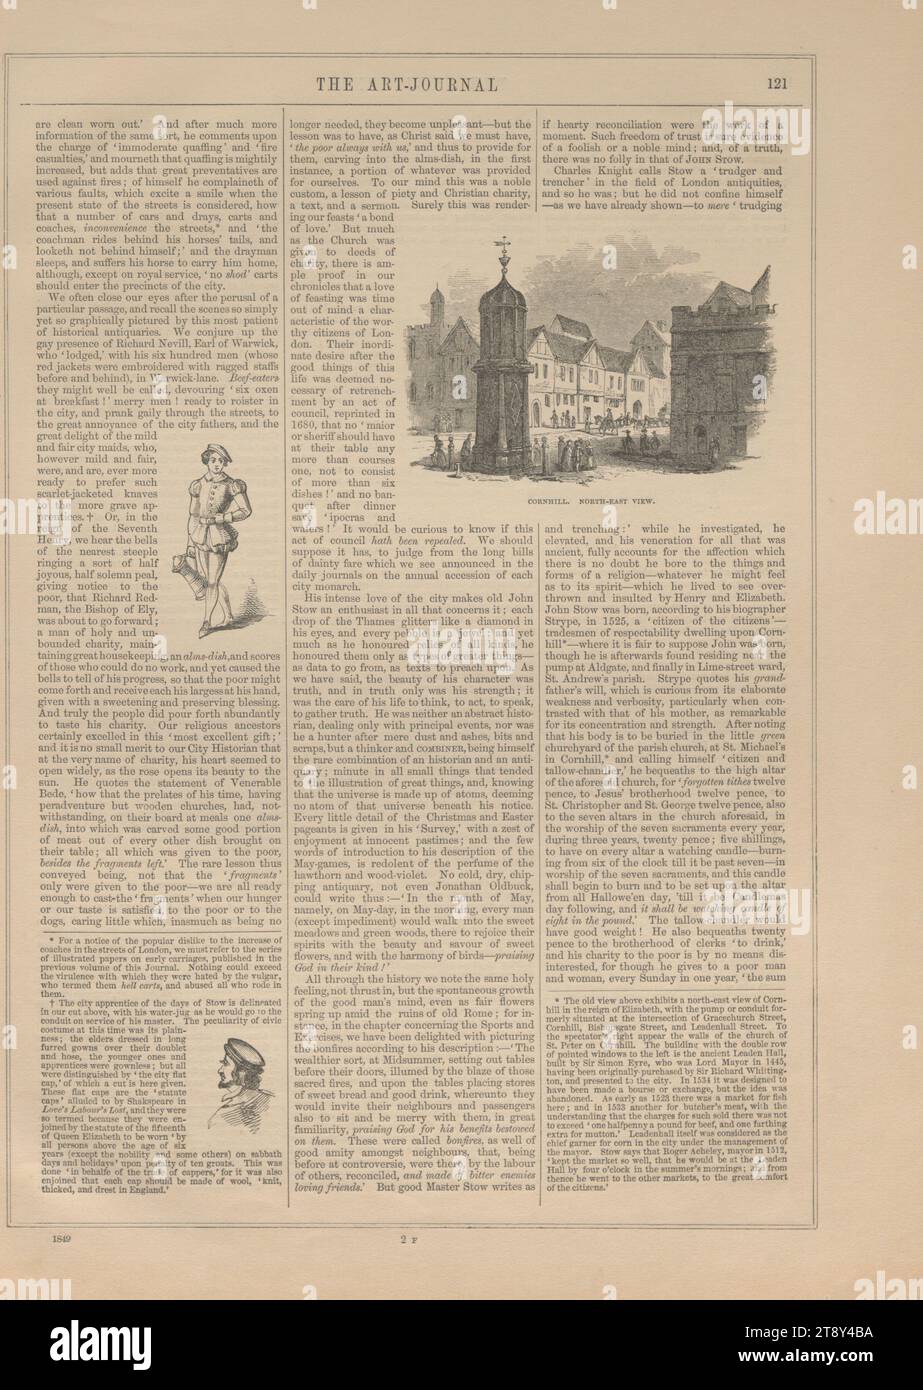 CHEAPSIDE CROSS; OLD LONDON BRIDGE; CORNHILL (...) SCHNEIDERHALLE; ALDGATE (...); EINGANG (...); KIRCHE ST. ANDREW UNDERSHAFT; STOOS MONUMENT.', Unknown, 1849, Paper, Holzstich, Höhe 32, 6 cm, Breite 23, 7 cm, bildende Kunst, Medien und Kommunikation, Nachlass Constantin von Wurzbach, Kirche (außen), Zeitung, Zeitungsblatt, Sammlung Wien Stockfoto